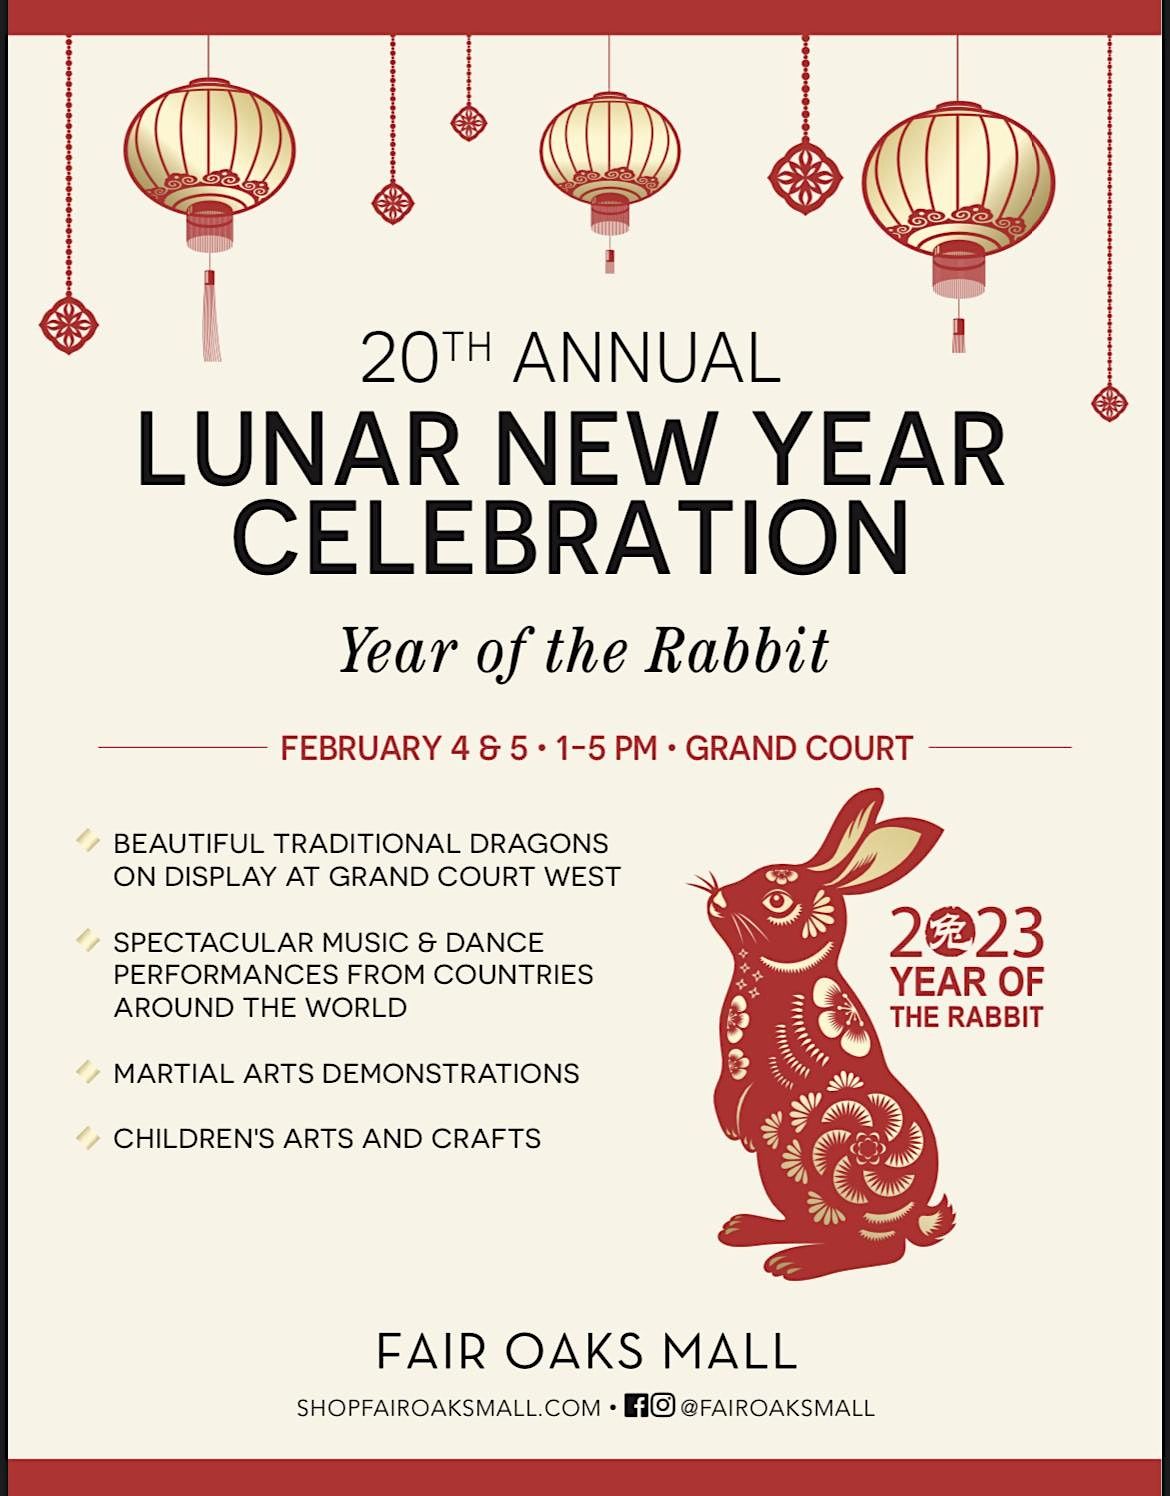 20th Annual Lunar New Year Celebration at Fair Oaks Mall Fair Oaks